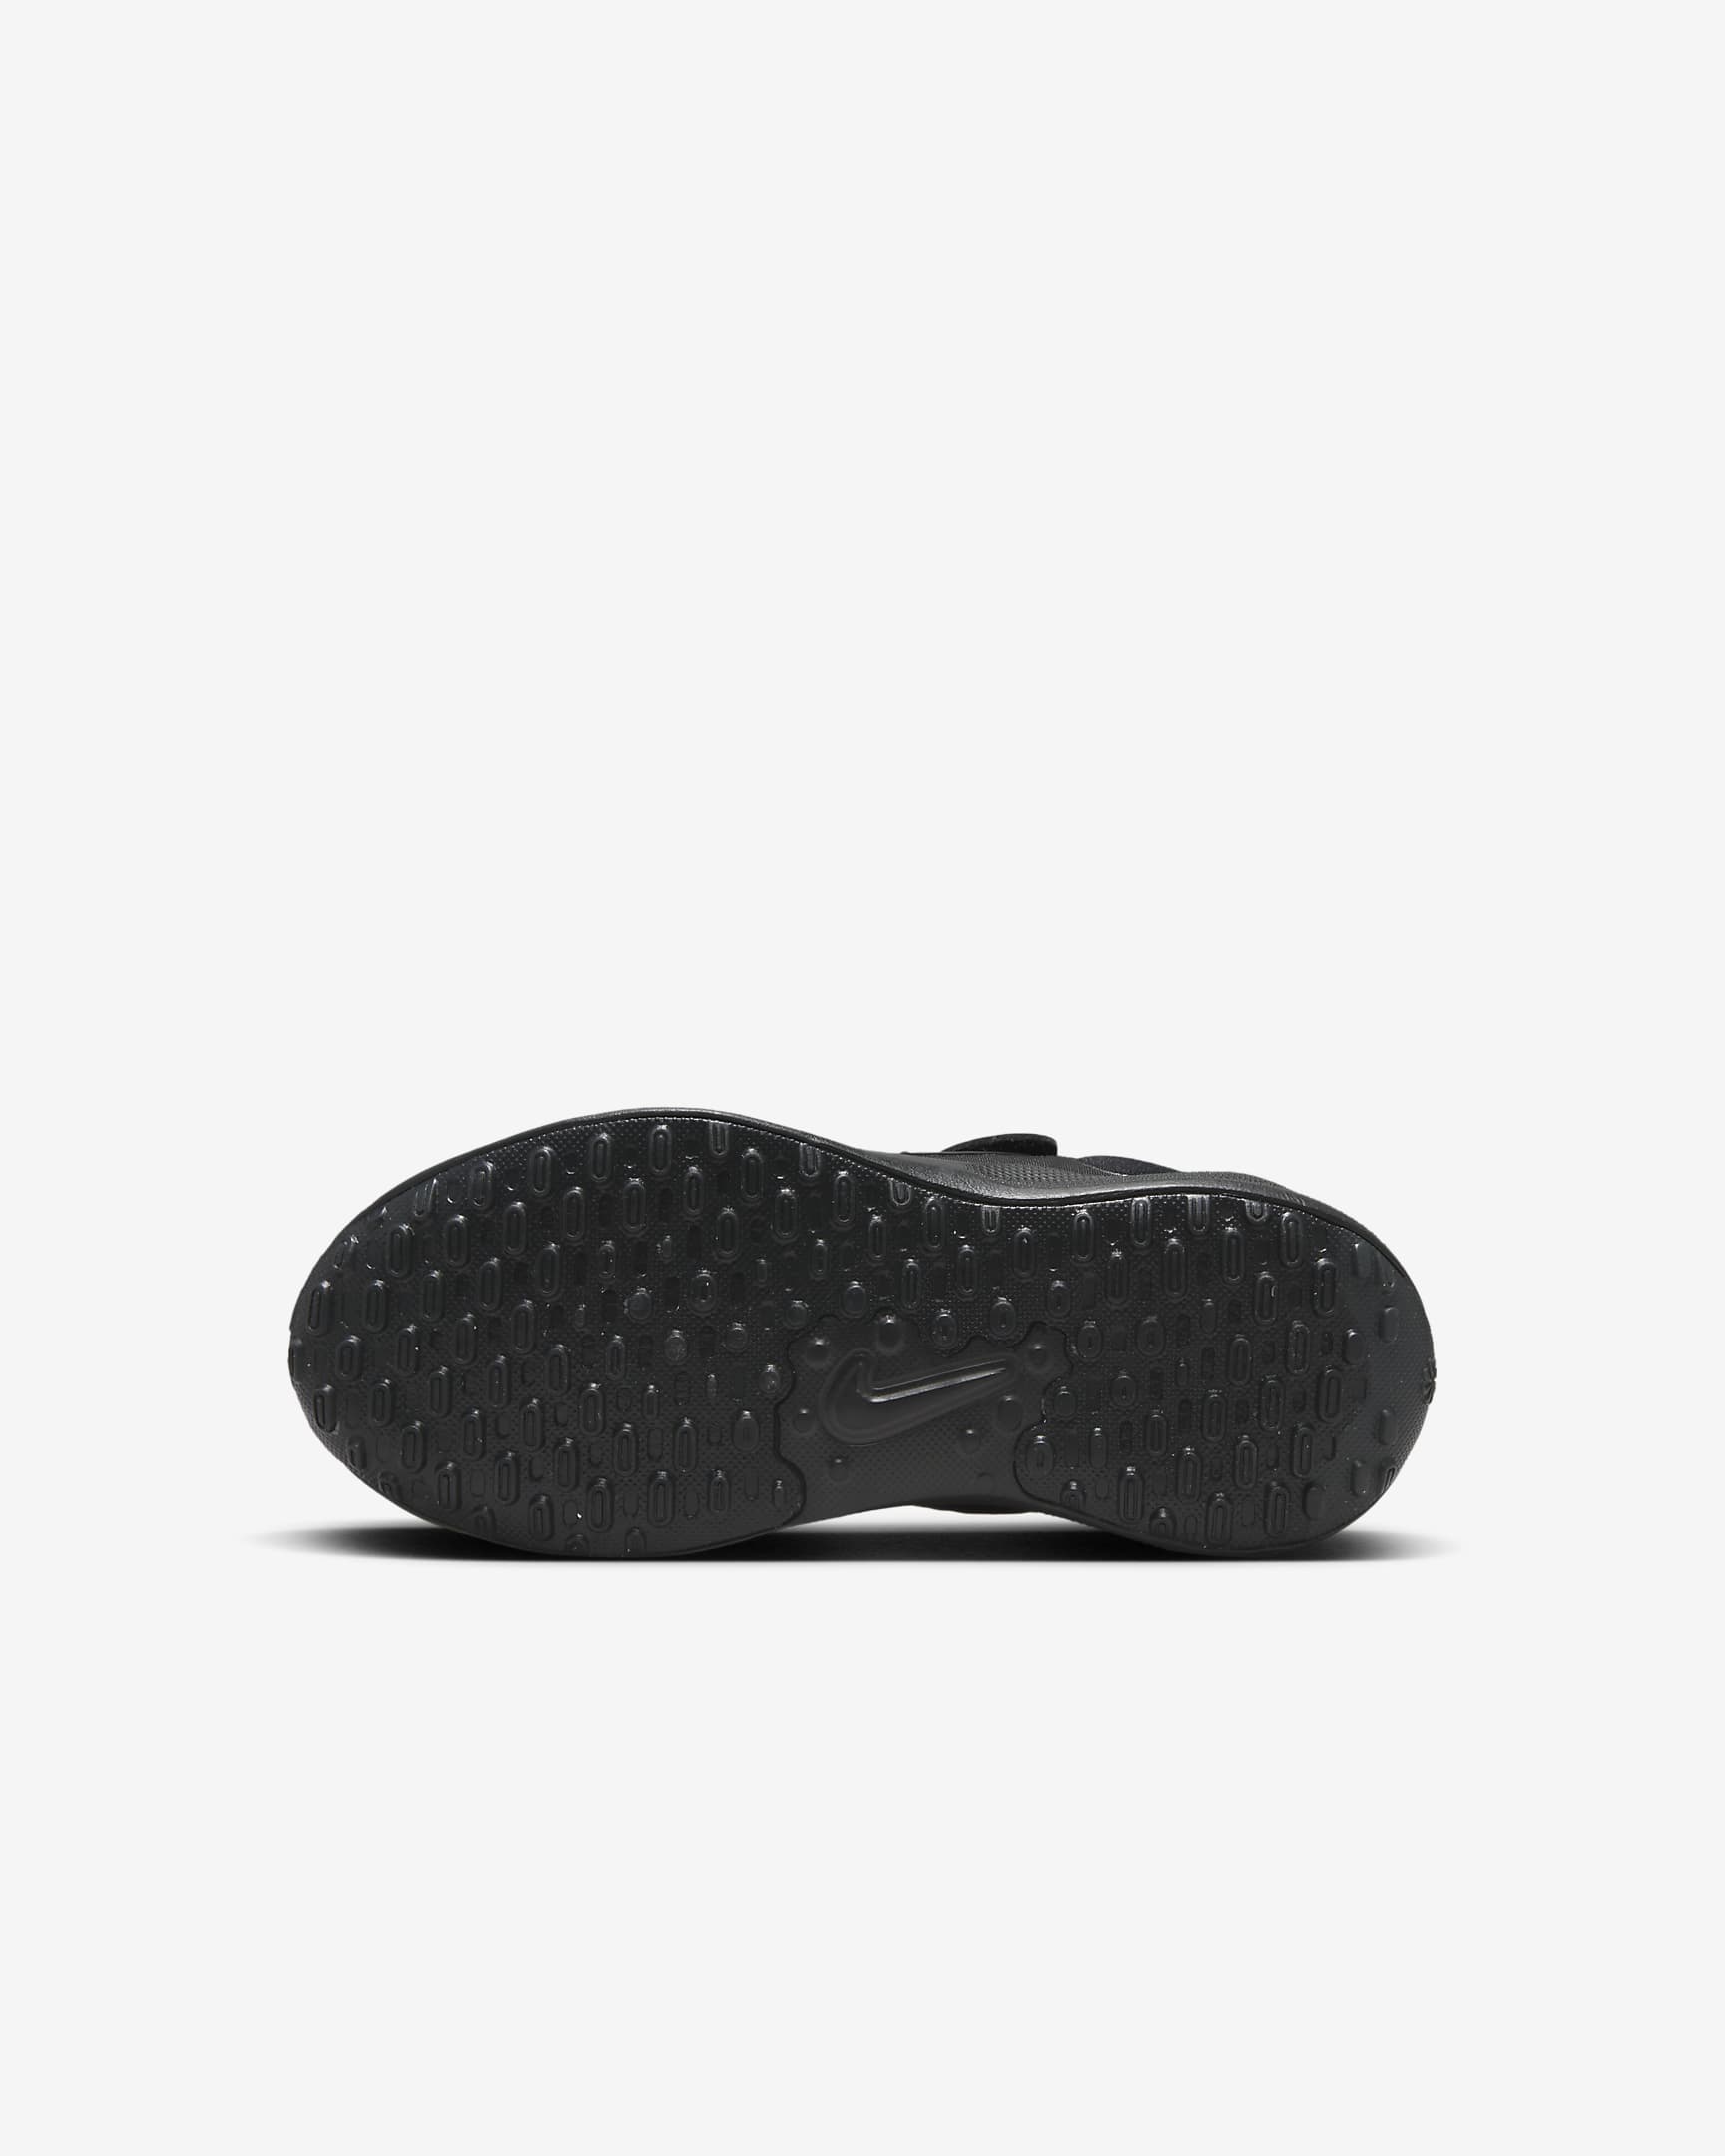 Chaussure Nike Revolution 7 pour enfant - Noir/Anthracite